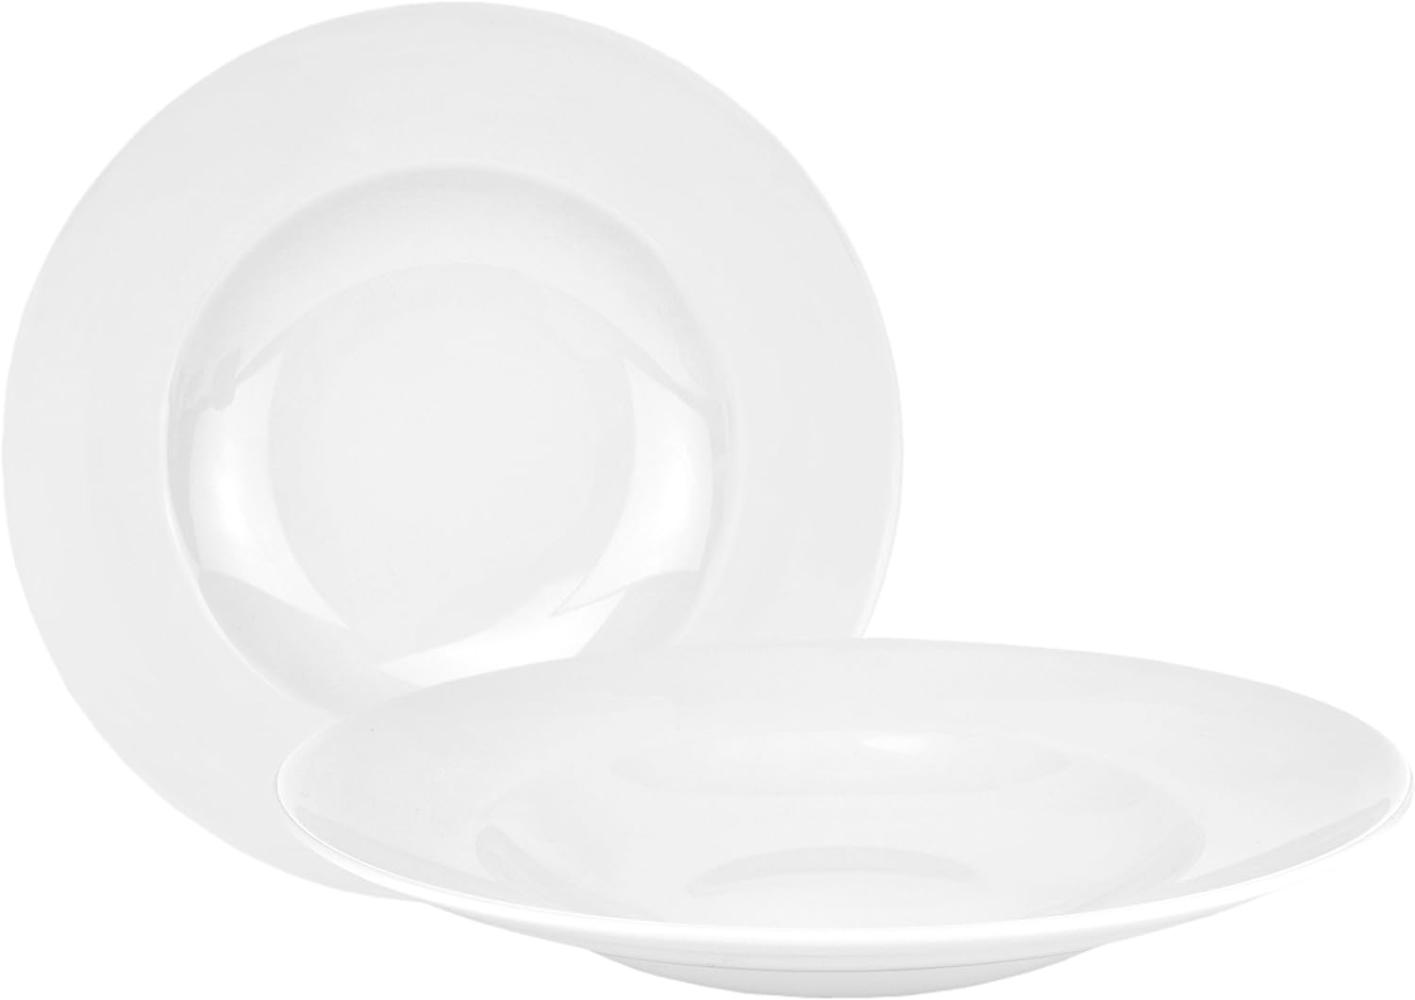 2erset Pasta Bowl 500ml Ø30cm tiefer Menüteller Nudelteller edles Porzellan klassisch weiß rund Bild 1